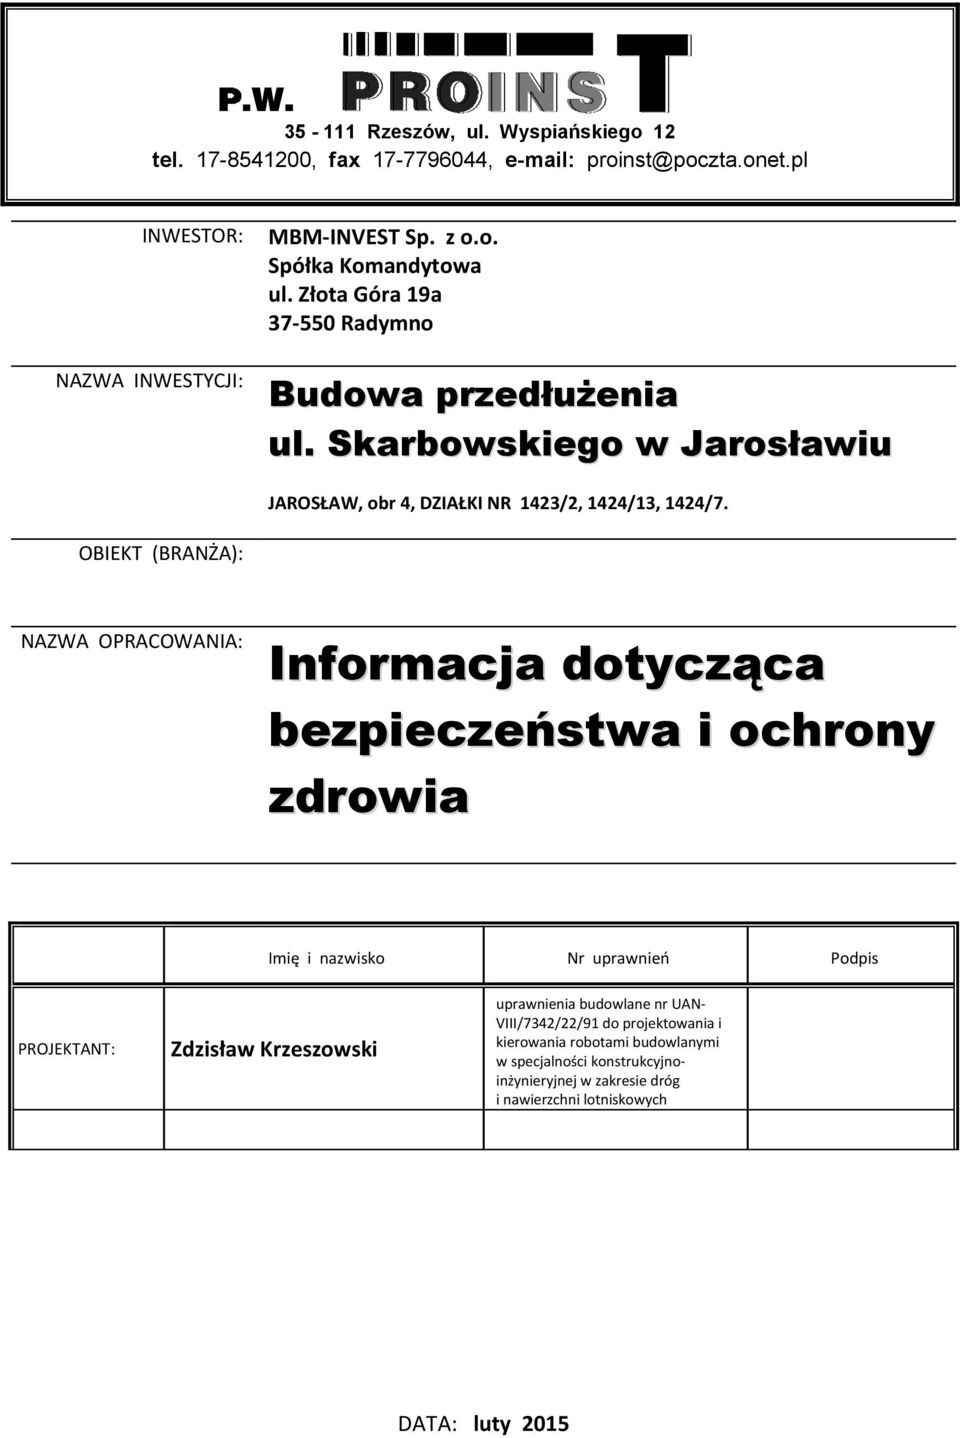 OBIEKT (BRANŻA): NAZWA OPRACOWANIA: Informacja dotycząca bezpieczeństwa i ochrony zdrowia Imię i nazwisko Nr uprawnień Podpis PROJEKTANT: Zdzisław Krzeszowski